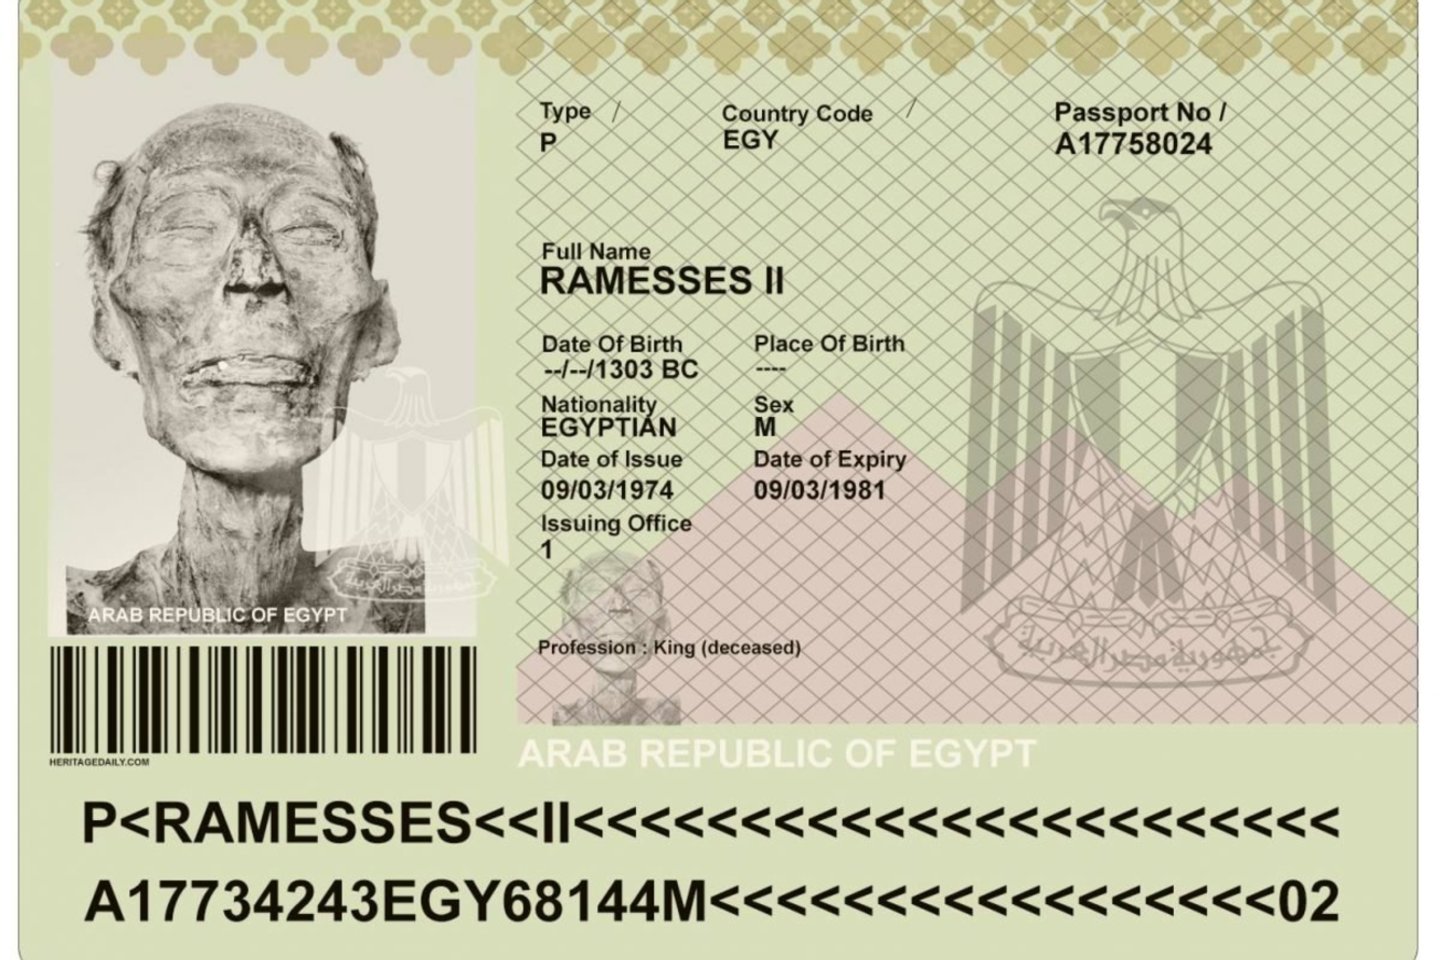  Prancūzų įstatymai įvažiavimui į šalį ir keliavimui pro ją reikalauja galiojančio paso, todėl Egipto Vyriausybė faraonui išdavė pasą.